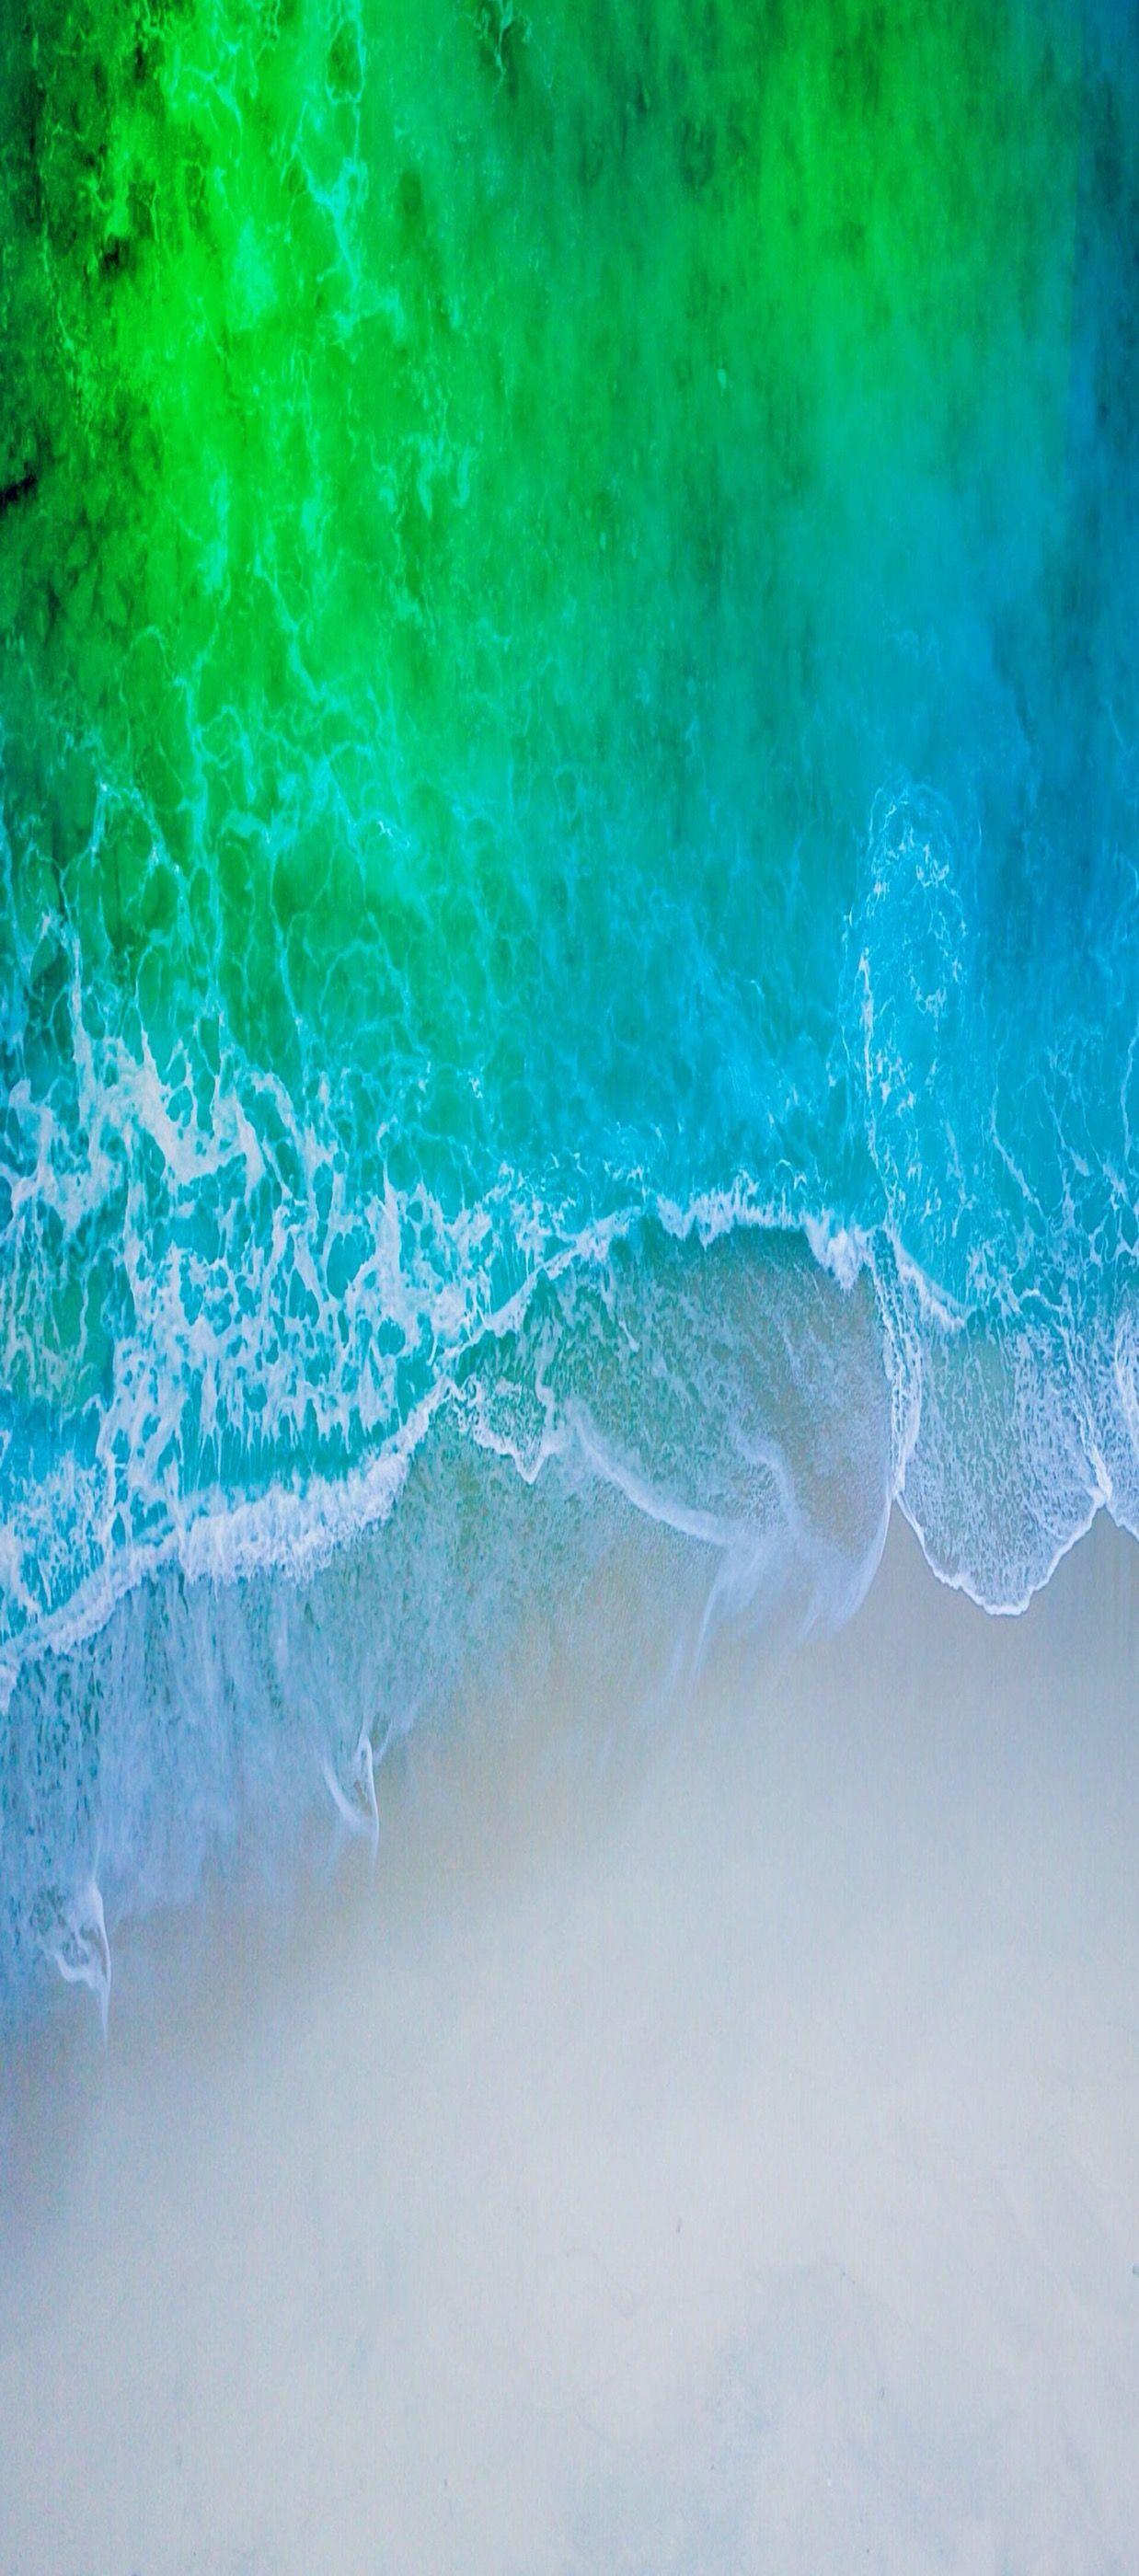 iOS iPhone X, Aqua, blue, Water, beach, wave, ocean